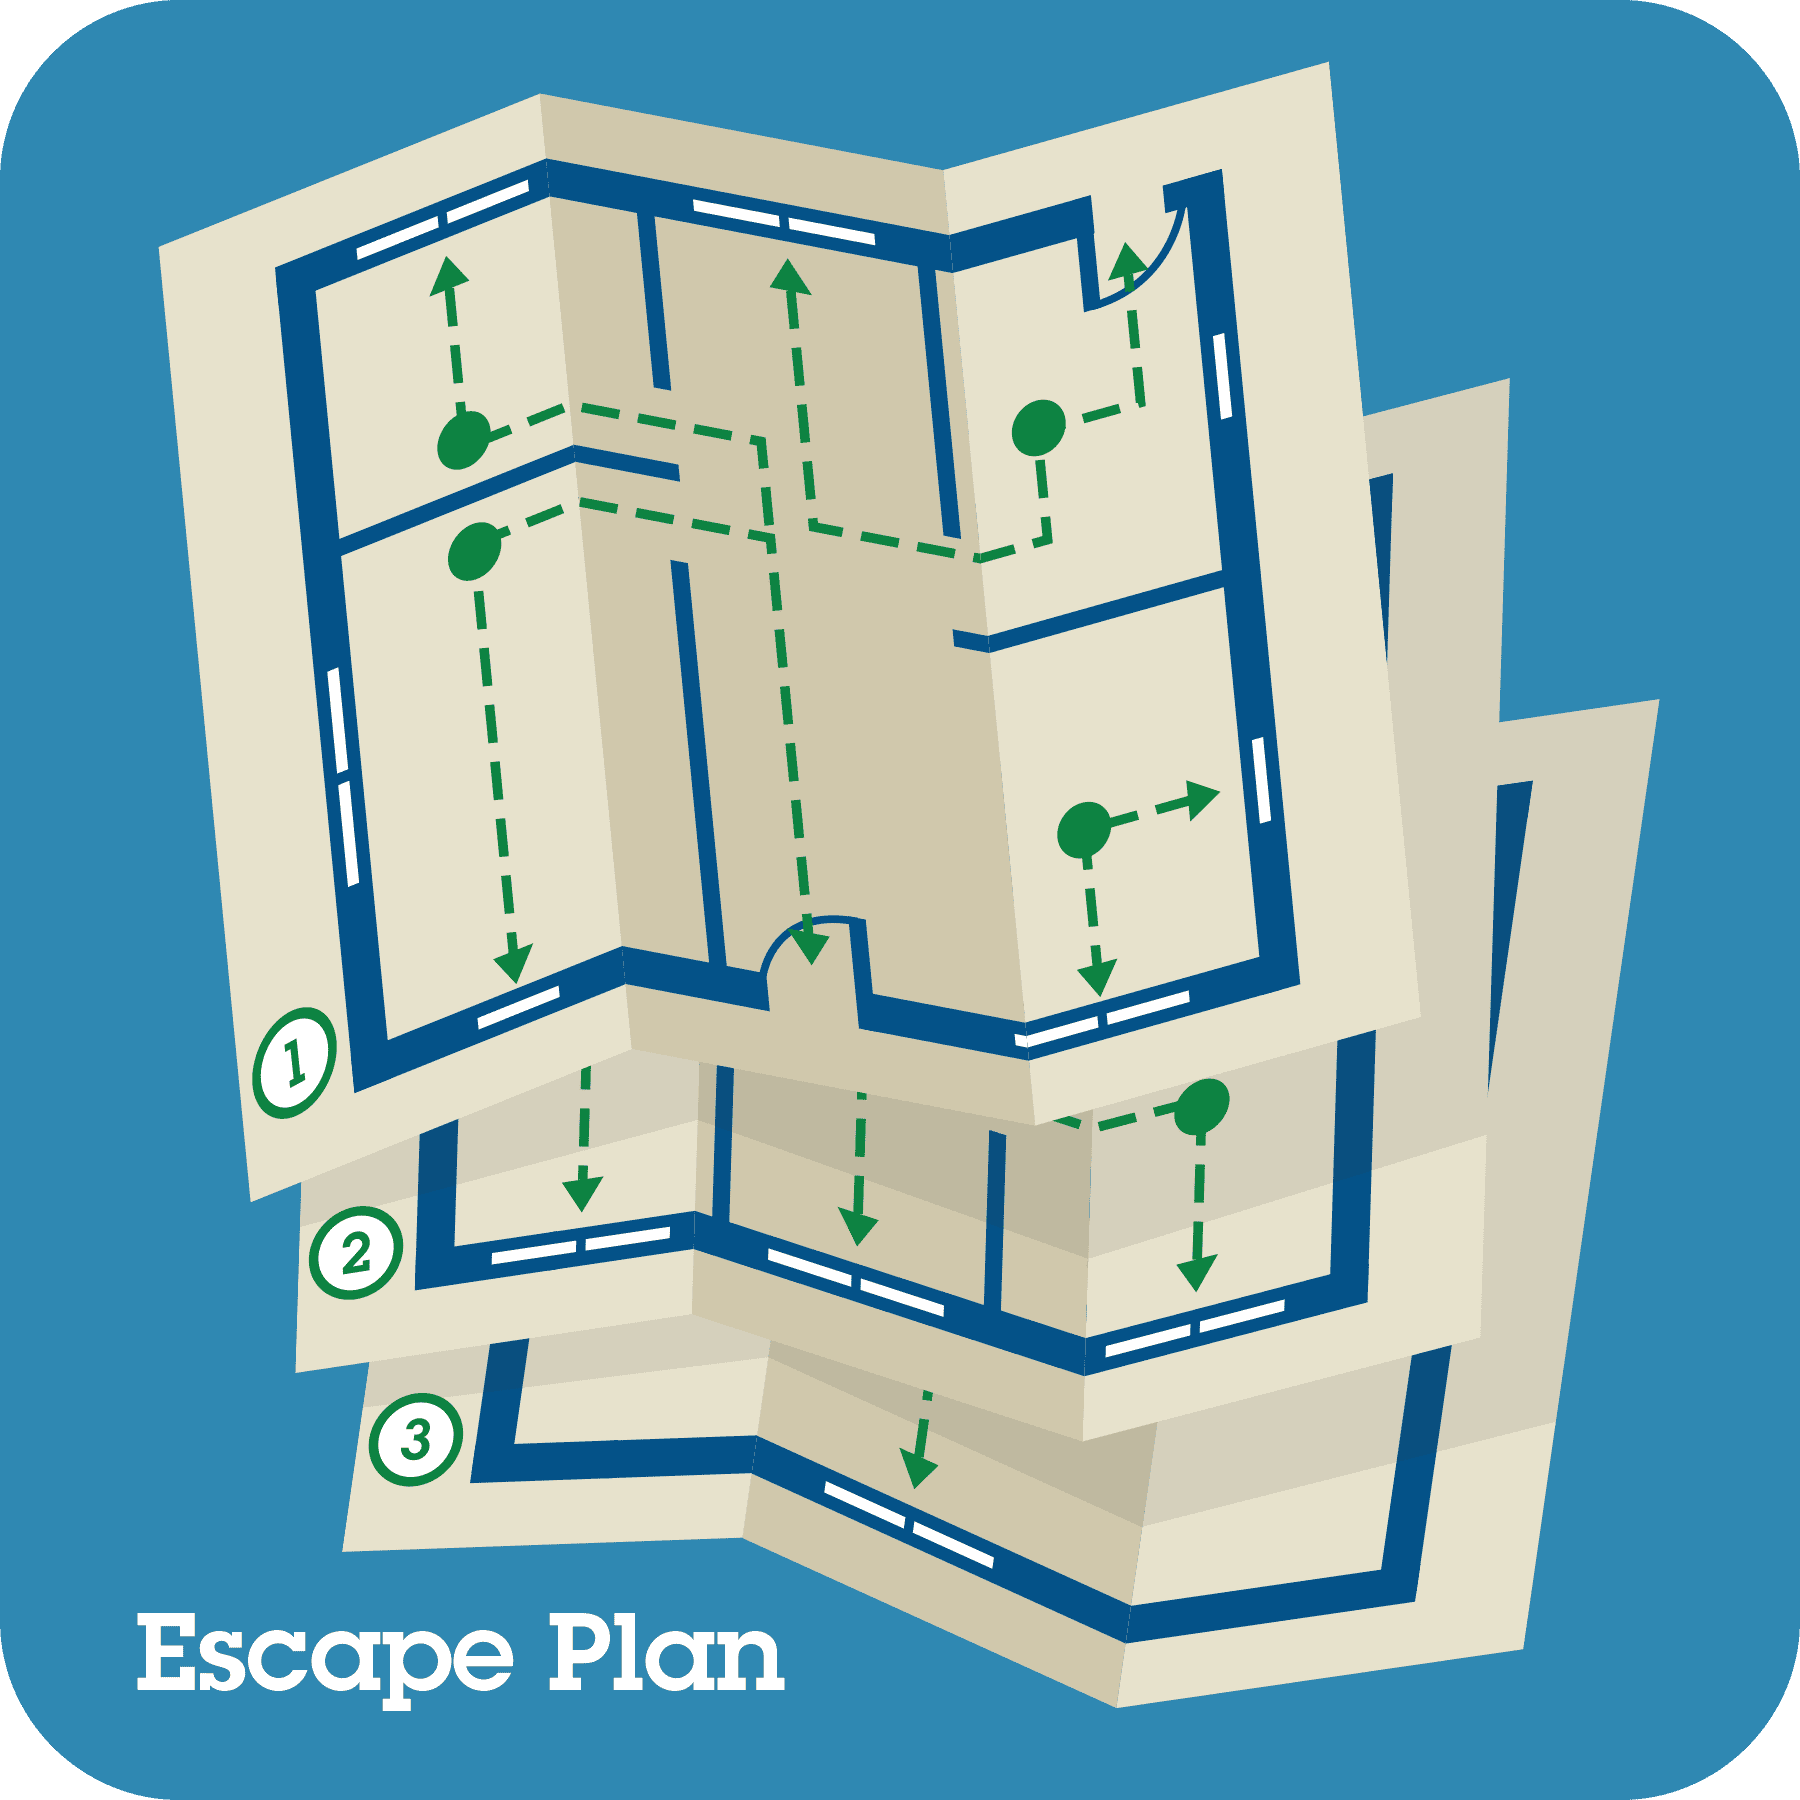 Escape planning